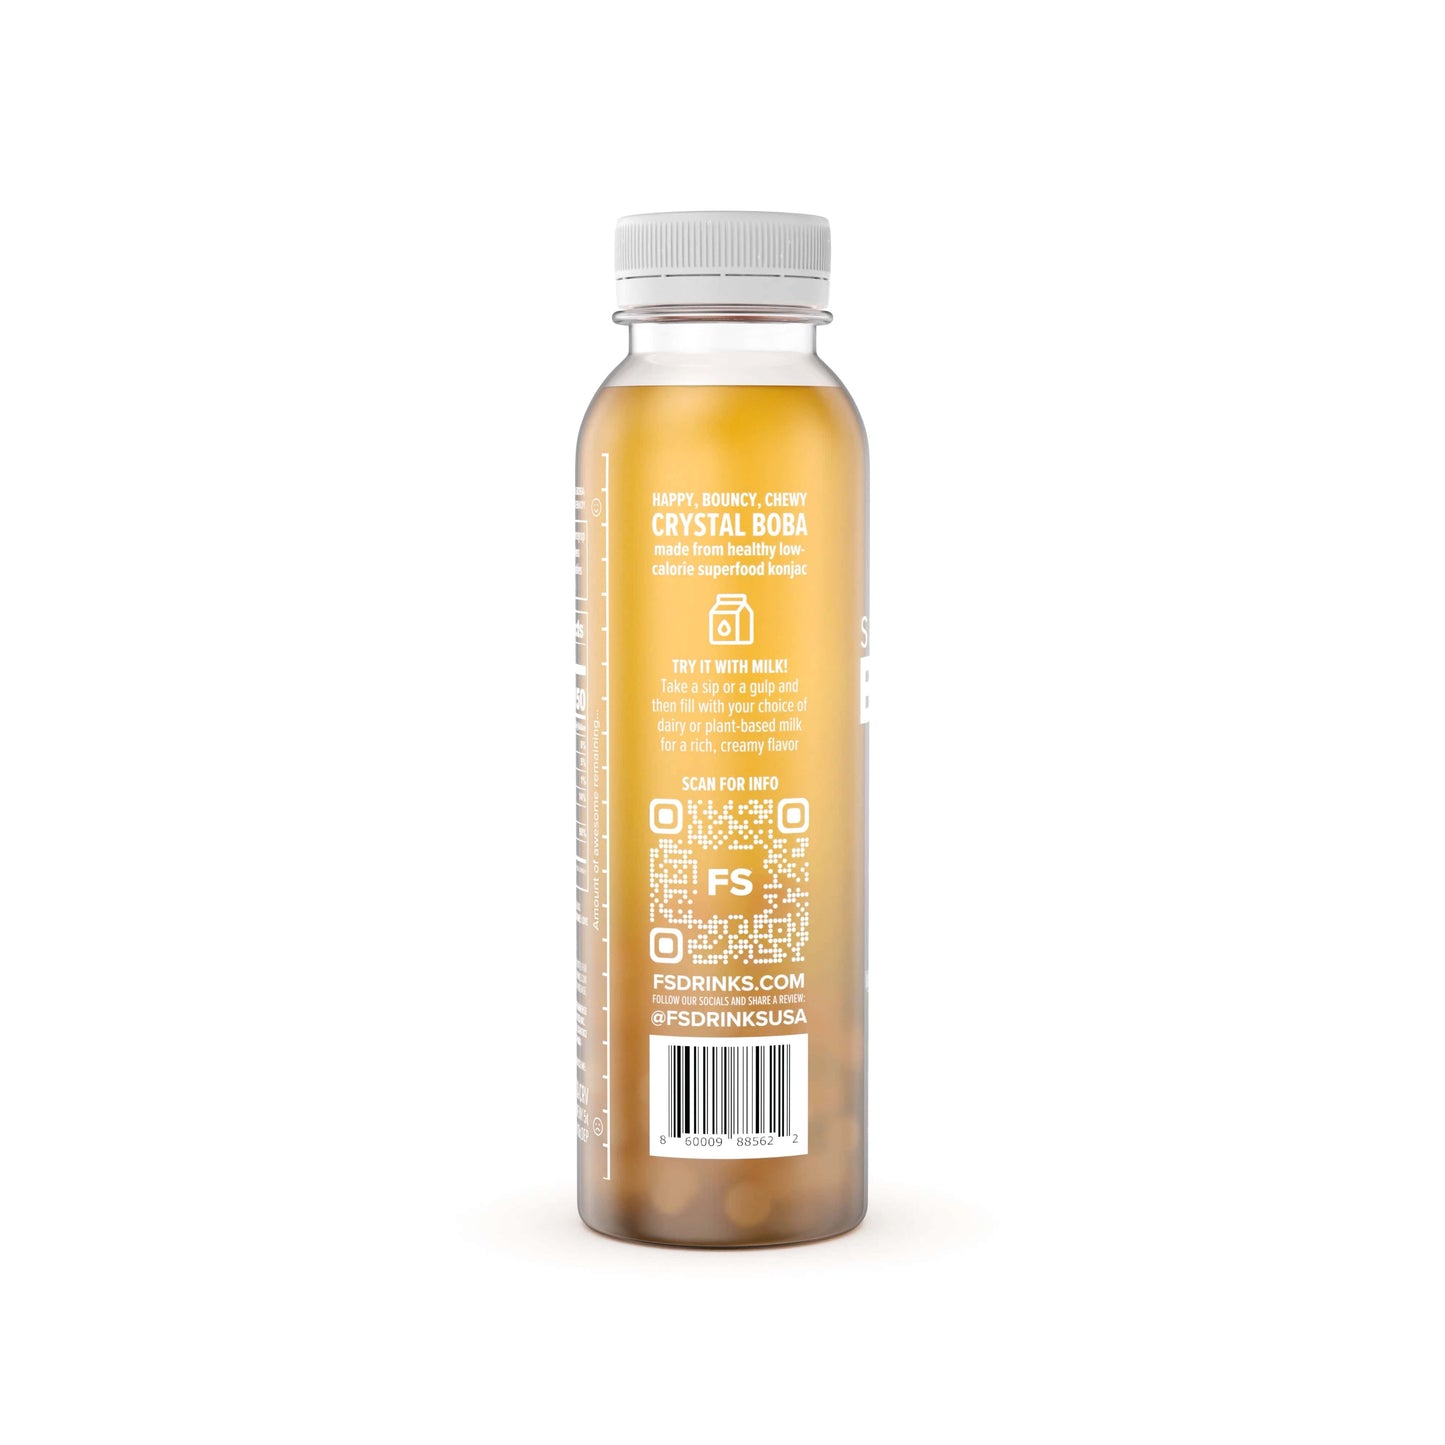 Marvelous Mango Juice + Crystal Boba